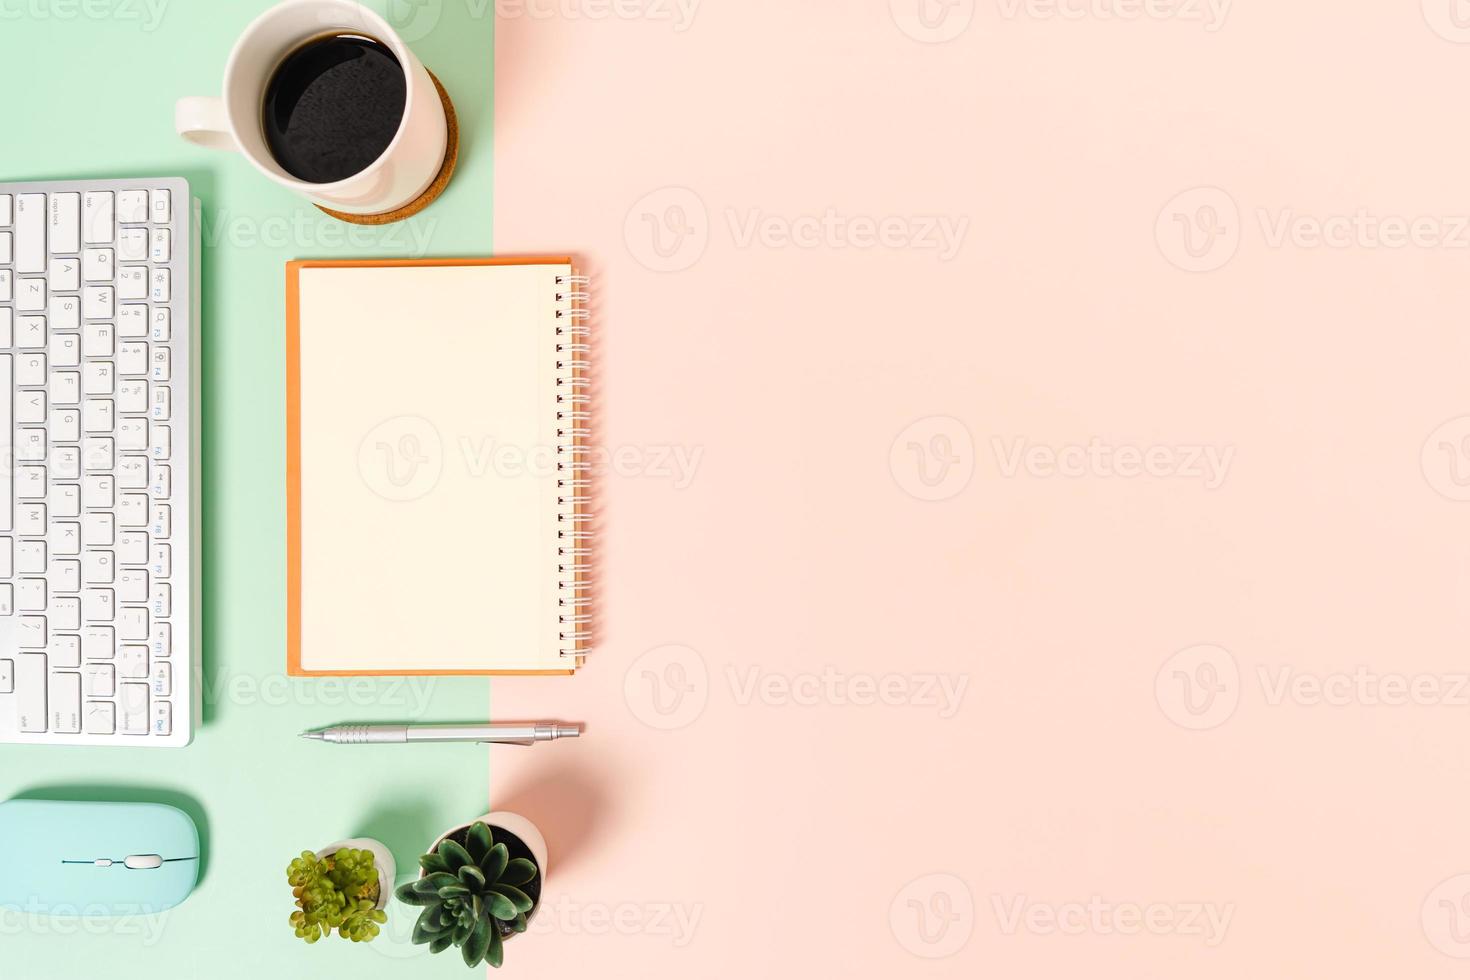 foto plana leiga criativa da mesa do espaço de trabalho. mesa de escritório de vista superior com teclado, mouse e caderno preto de maquete aberta sobre fundo de cor rosa verde pastel. vista superior simulada com fotografia do espaço da cópia.